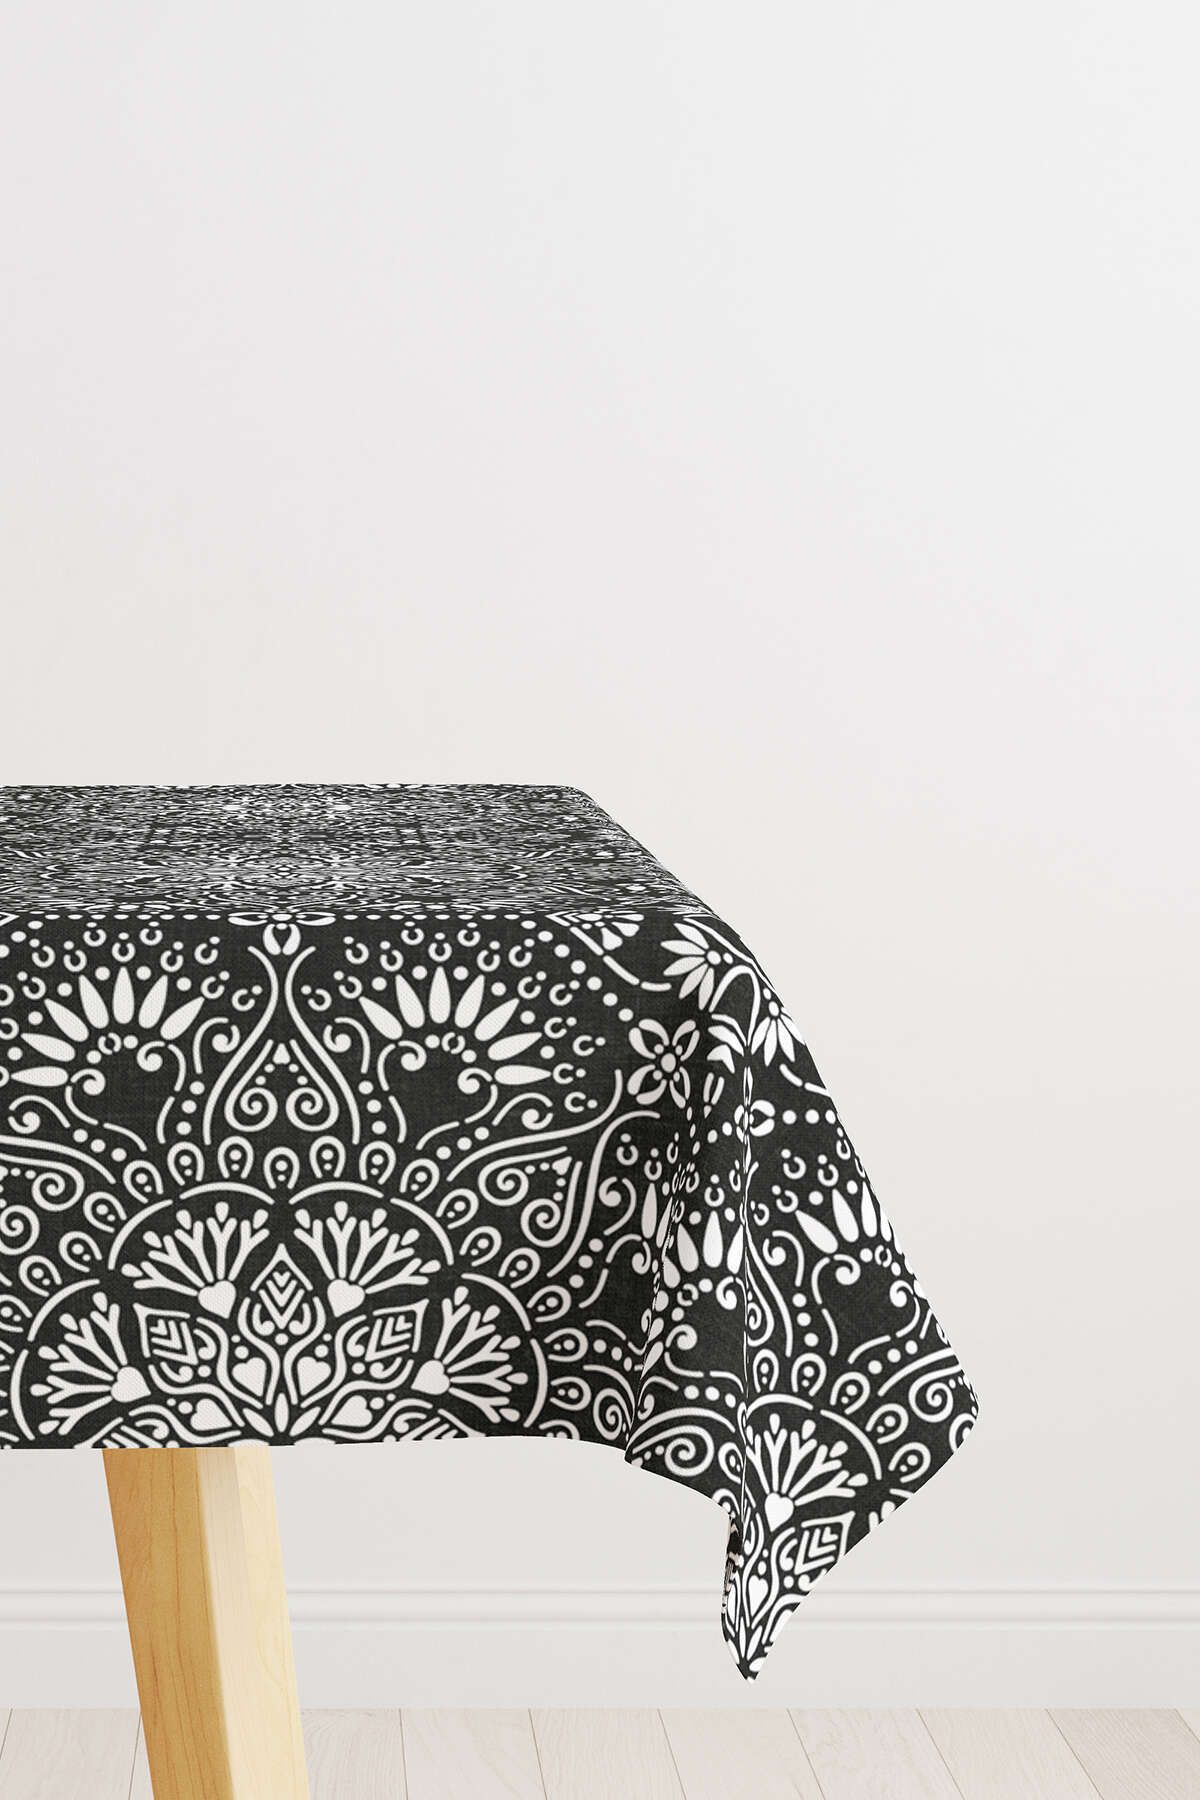 Cango Home Beyaz Siyah Ramazan Temalı Dekoratif Mandala Desenli Dijital Baskılı Masaörtüsü Cgh1296-ms